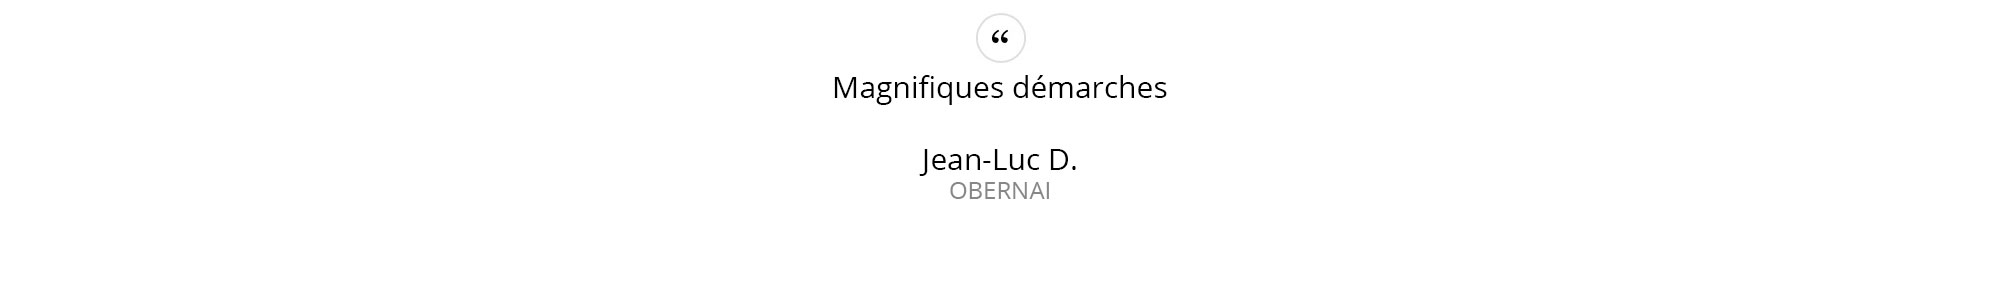 Jean-Luc-D.---OBERNAI